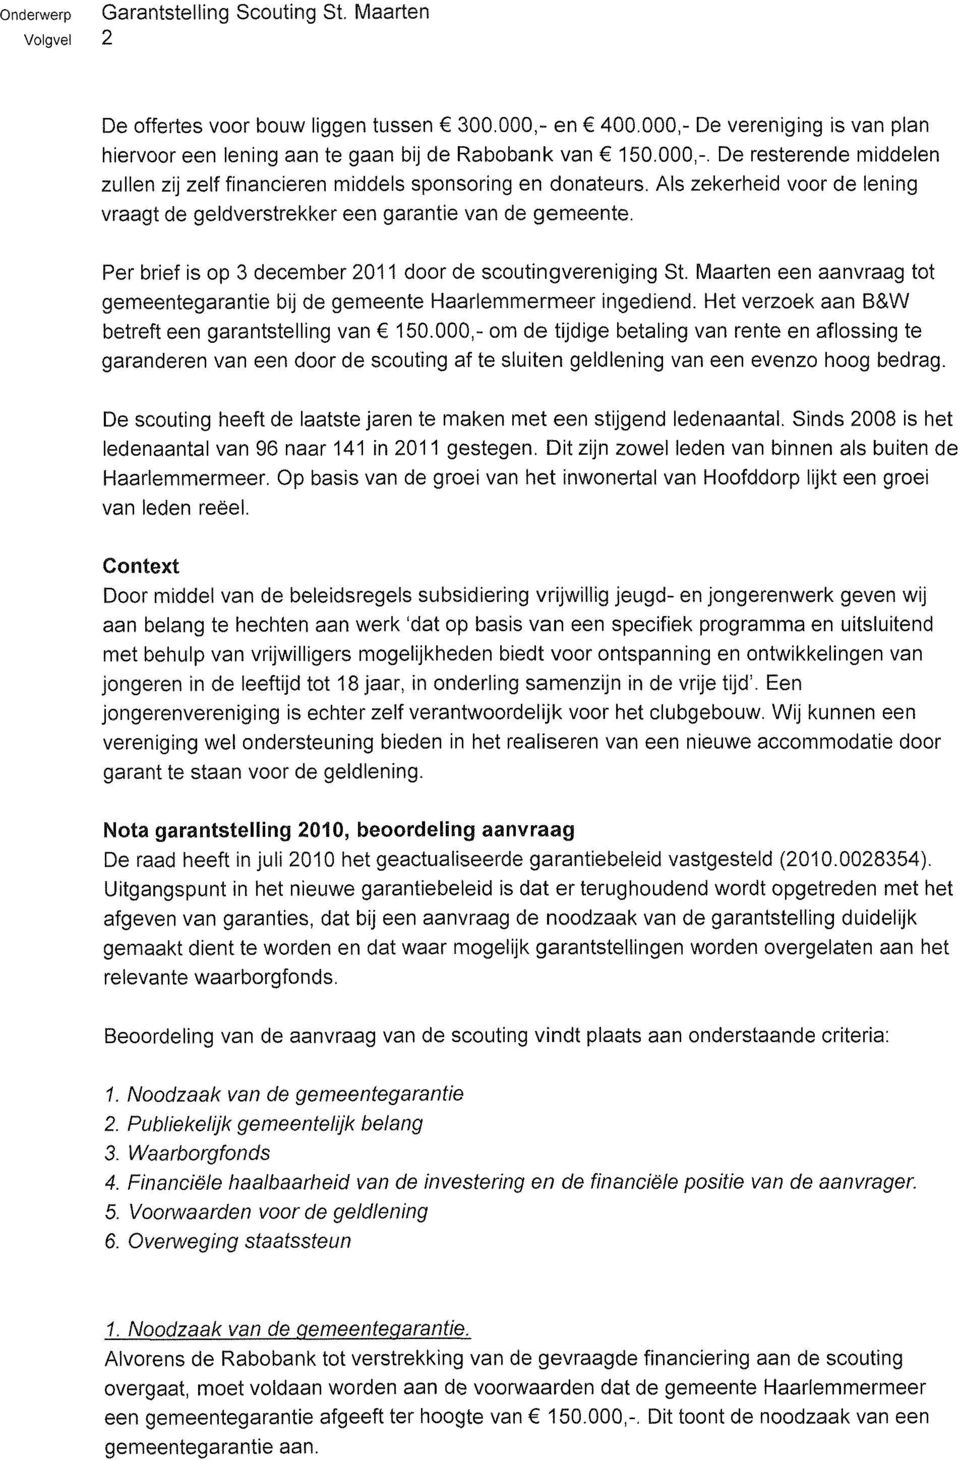 Maarten een aanvraag tot gemeentegarantie bij de gemeente Haarlemmermeer ingediend. Het verzoek aan B&W betreft een garantstelling van 150.